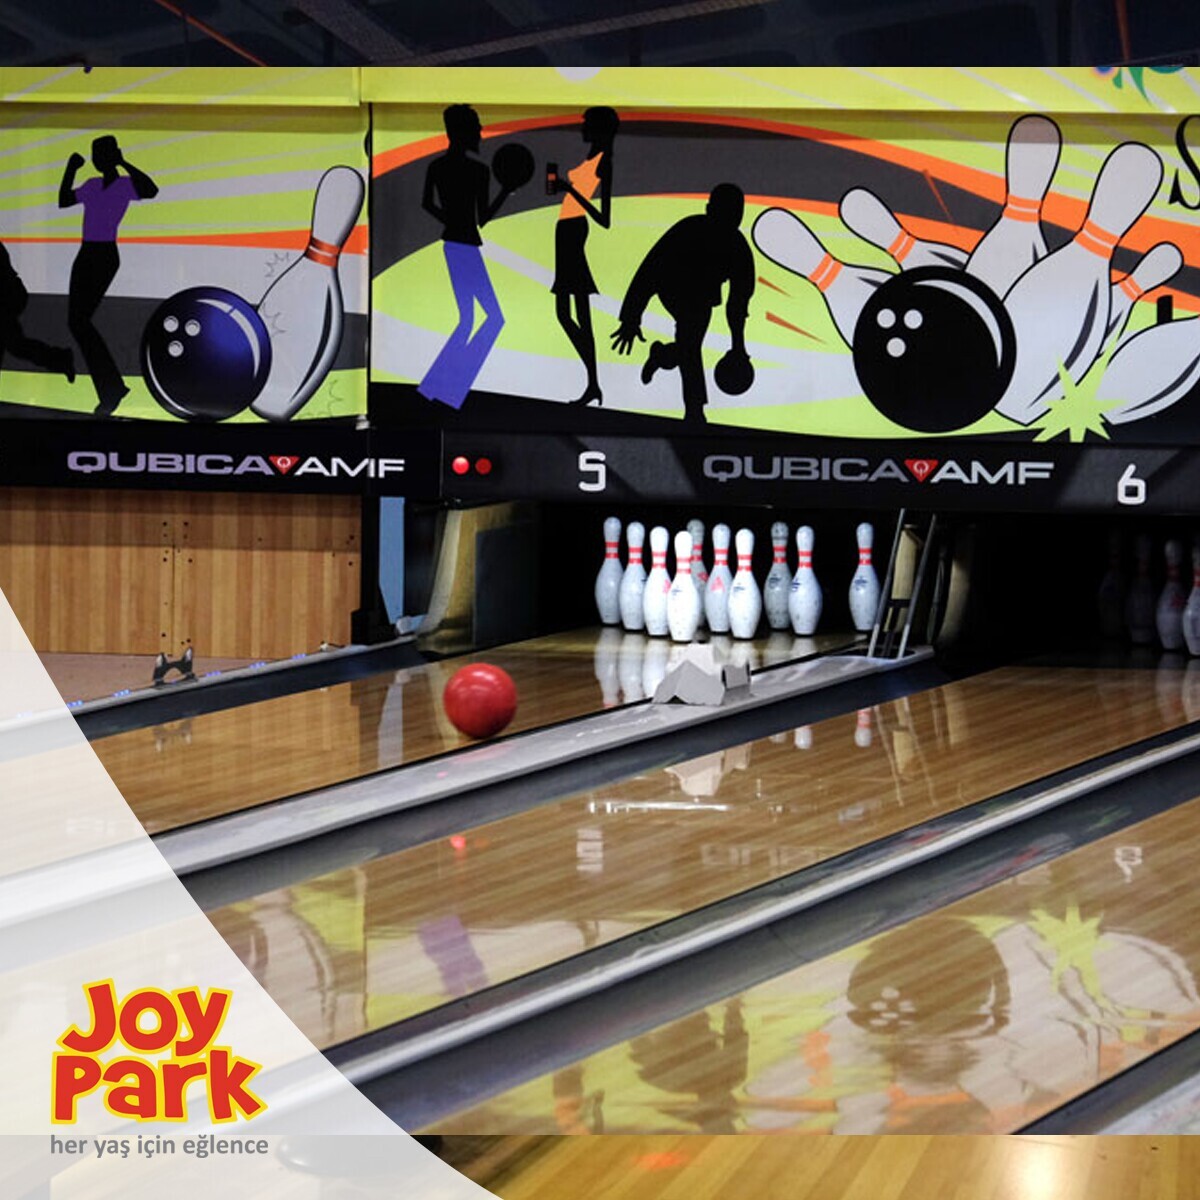 JoyPark Teraspark AVM Bowling Oyun Biletleri